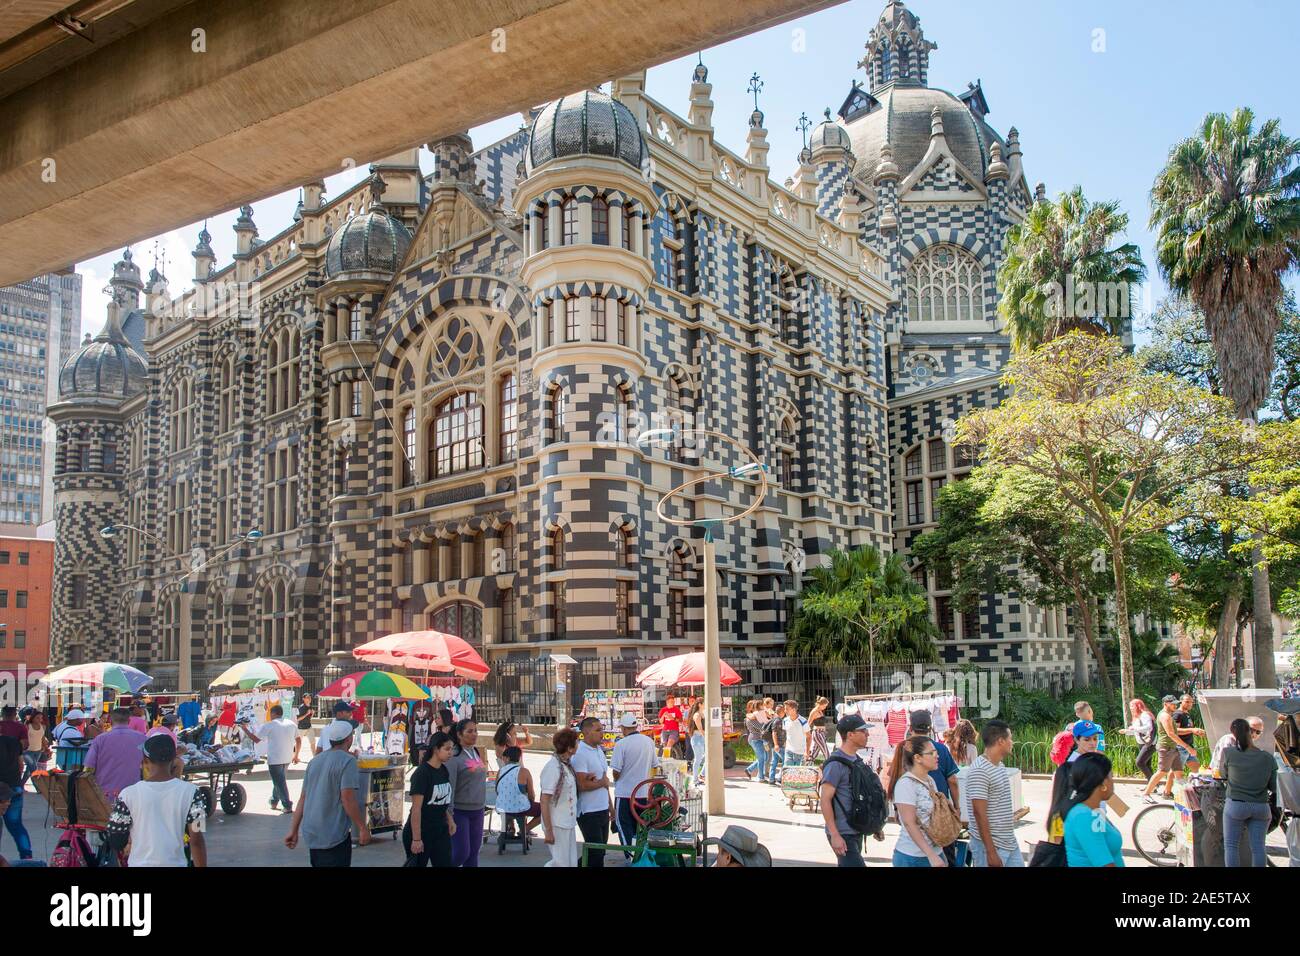 Le Rafael Uribe Uribe Palais de la culture et les vendeurs de rue au centre-ville de Medellin, Colombie.Medellin, Colombie. Banque D'Images